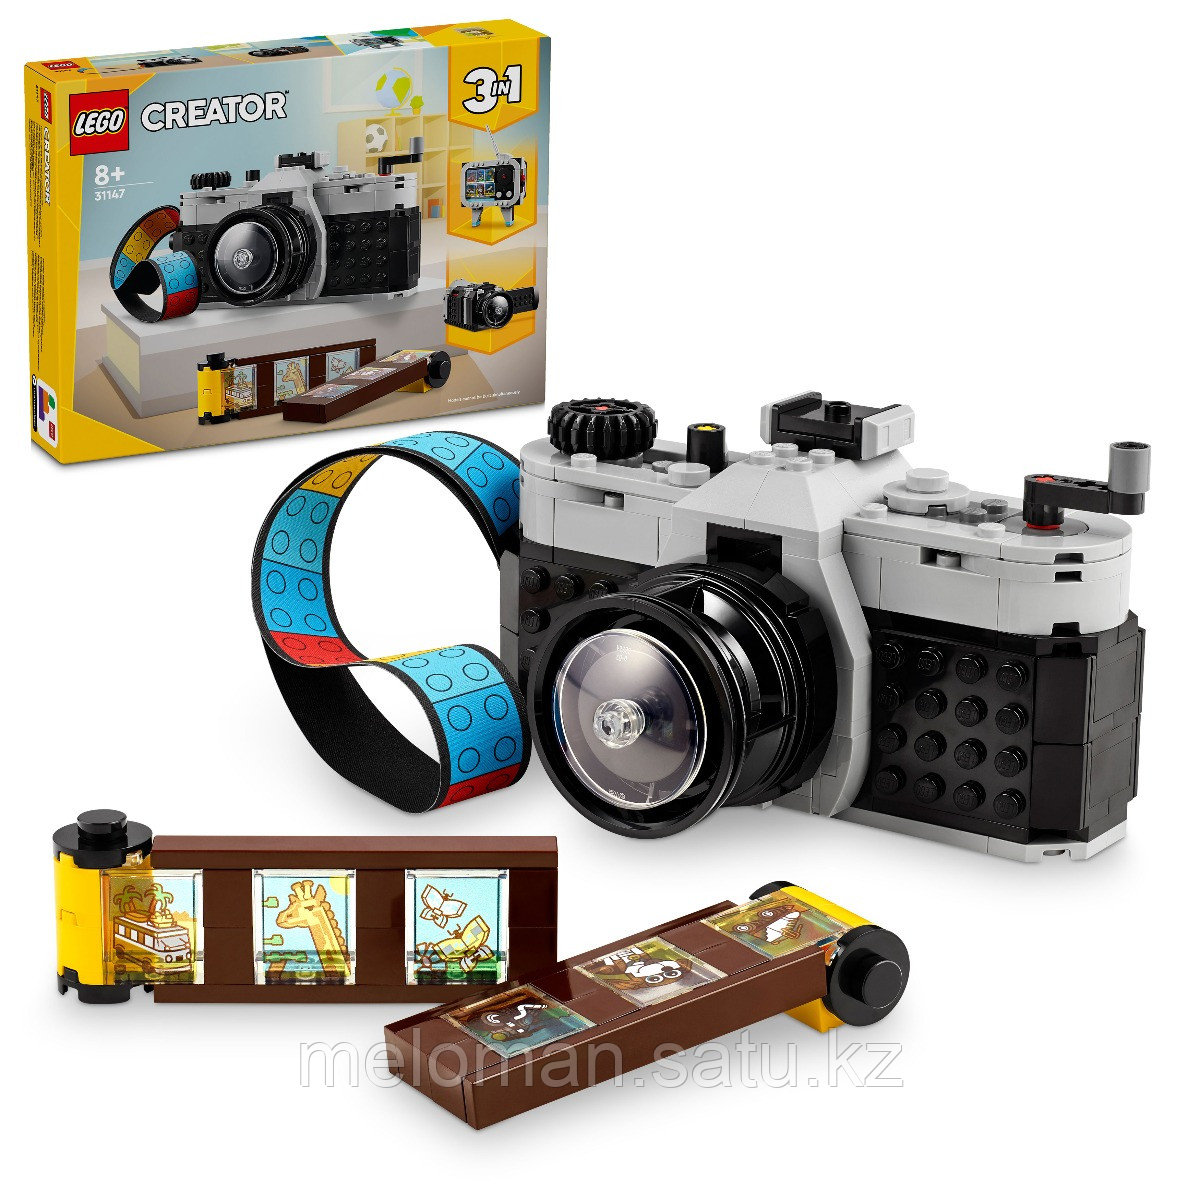 LEGO: Ретро-камера Creator 31147